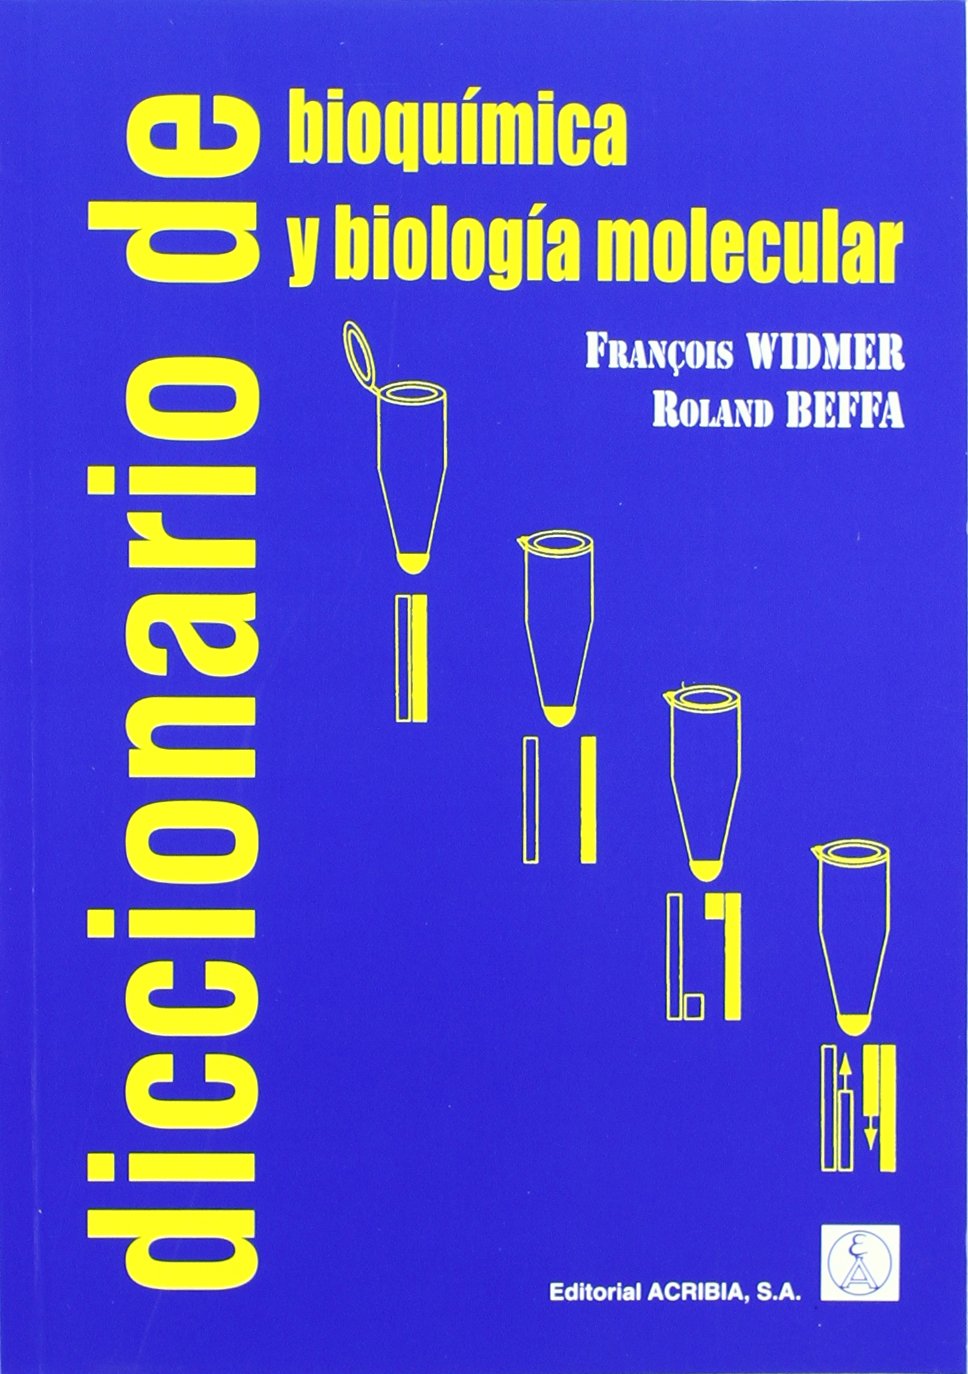 DICCIONARIO DE BIOQUIMICA Y BIOLOGIA MOLECULAR